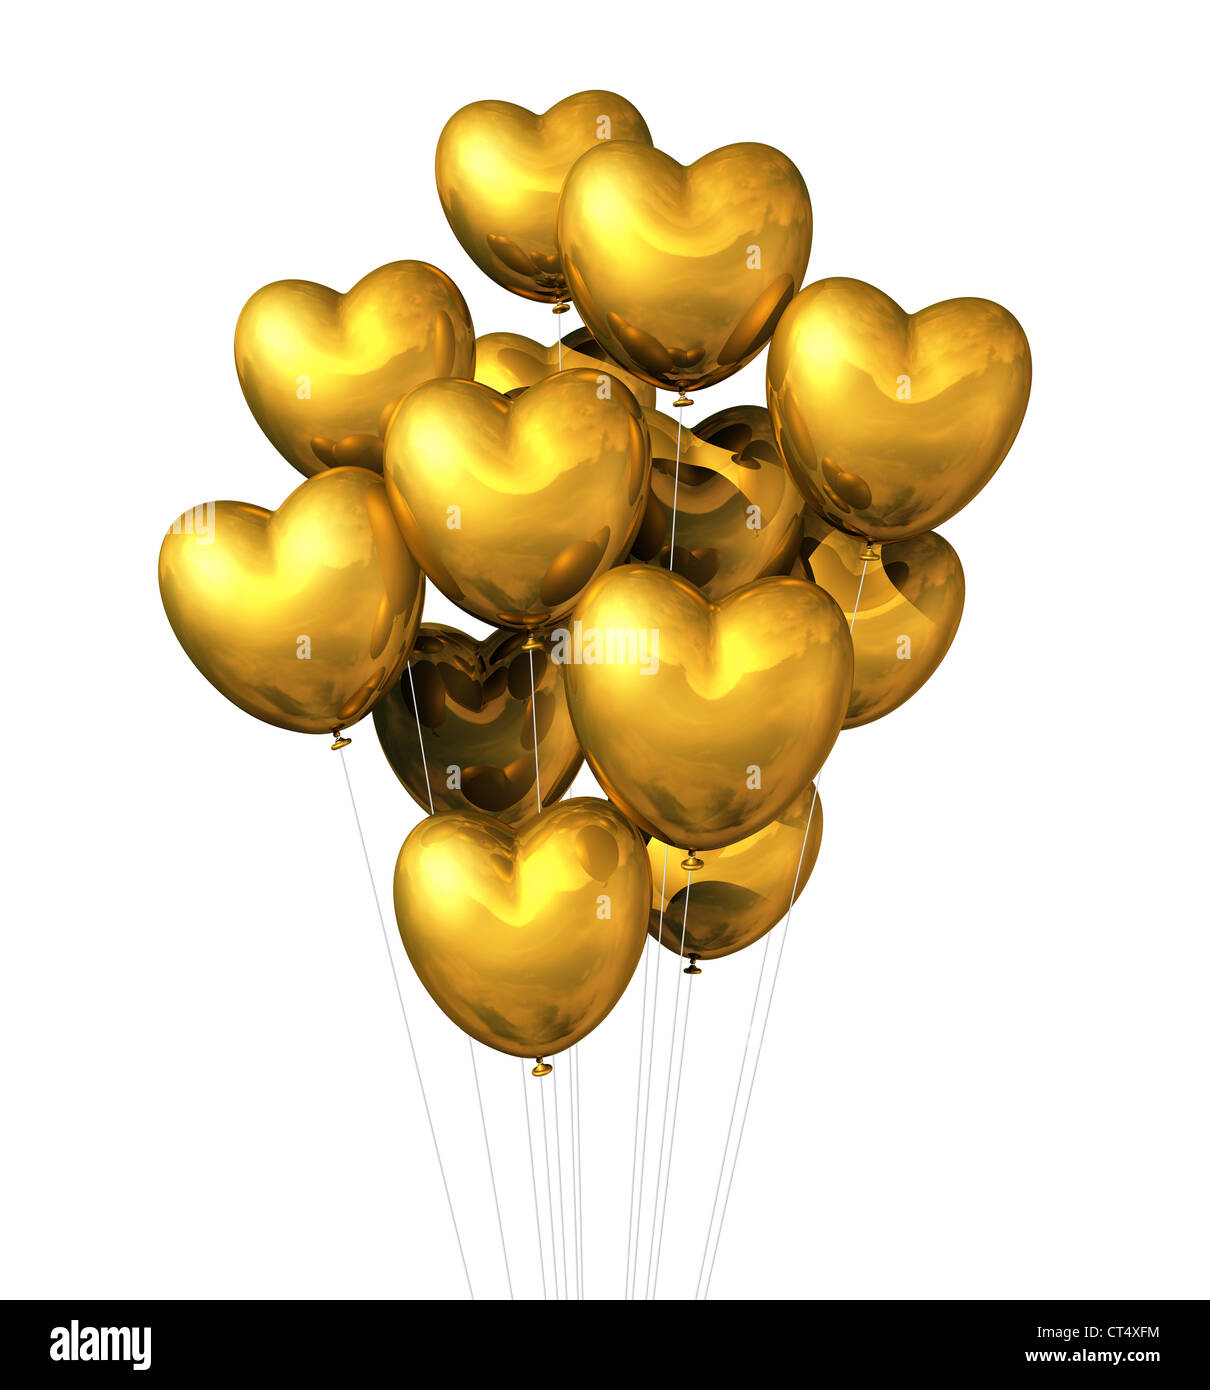 Ballons d'or coeur Banque d'images détourées - Alamy